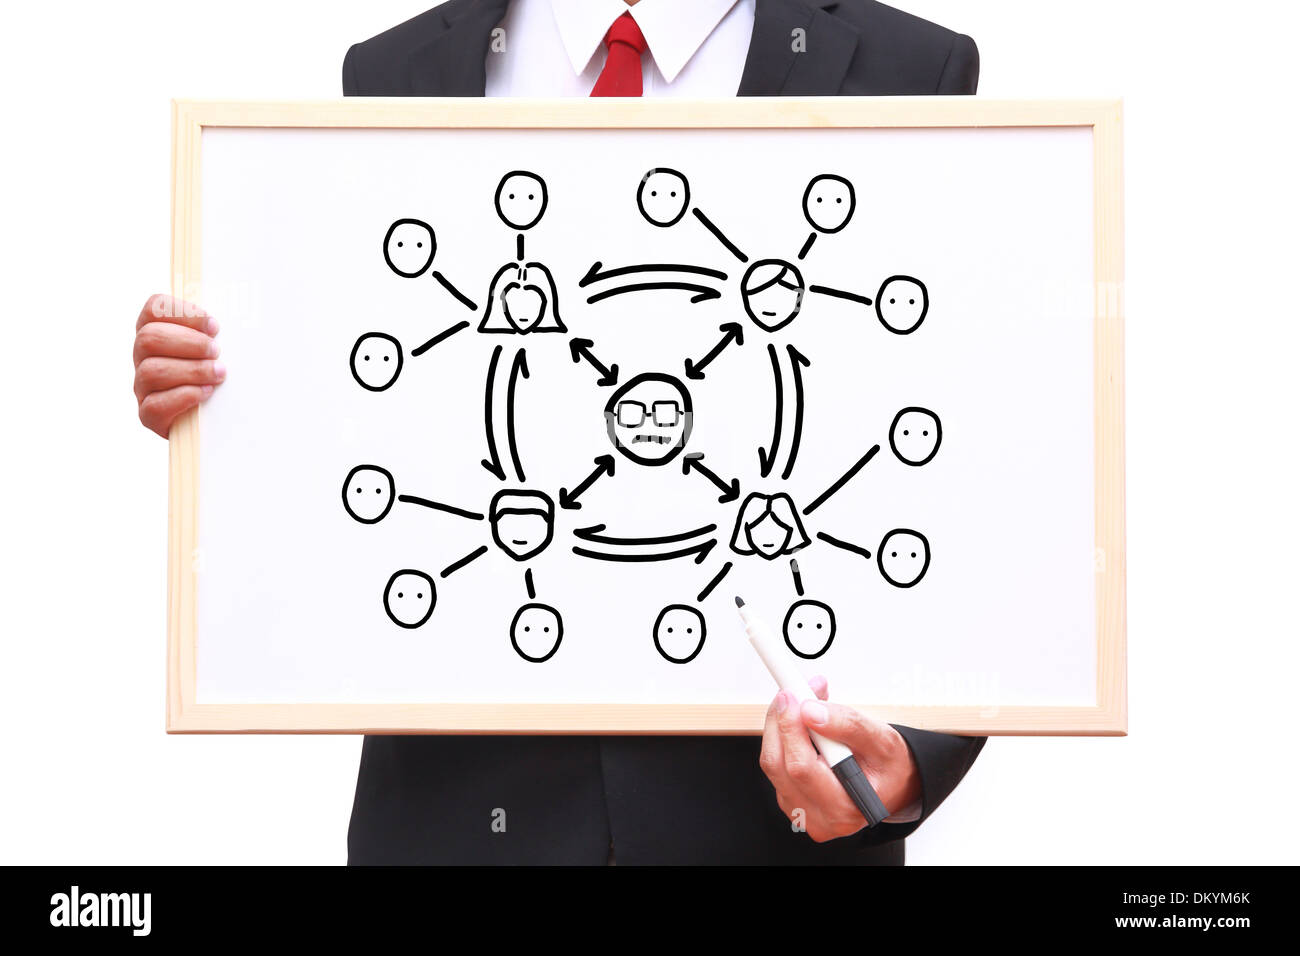 Teamarbeit-Diagramm zeichnen auf Whiteboard Stockfoto